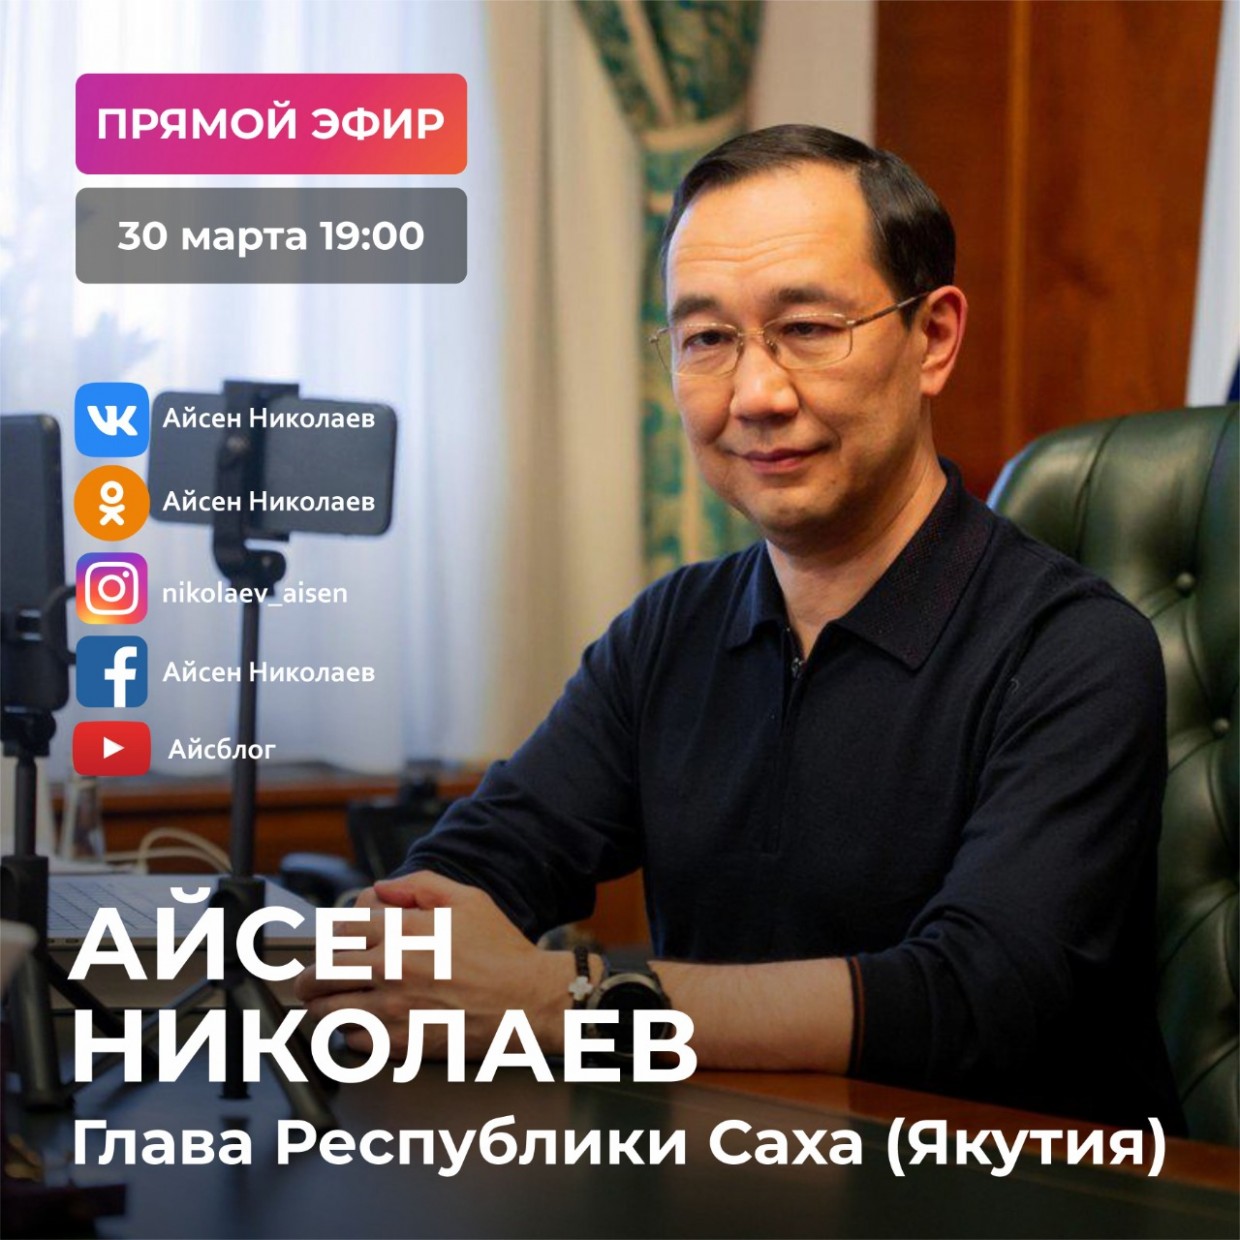 Айсен Николаев проведет прямой эфир в социальных сетях